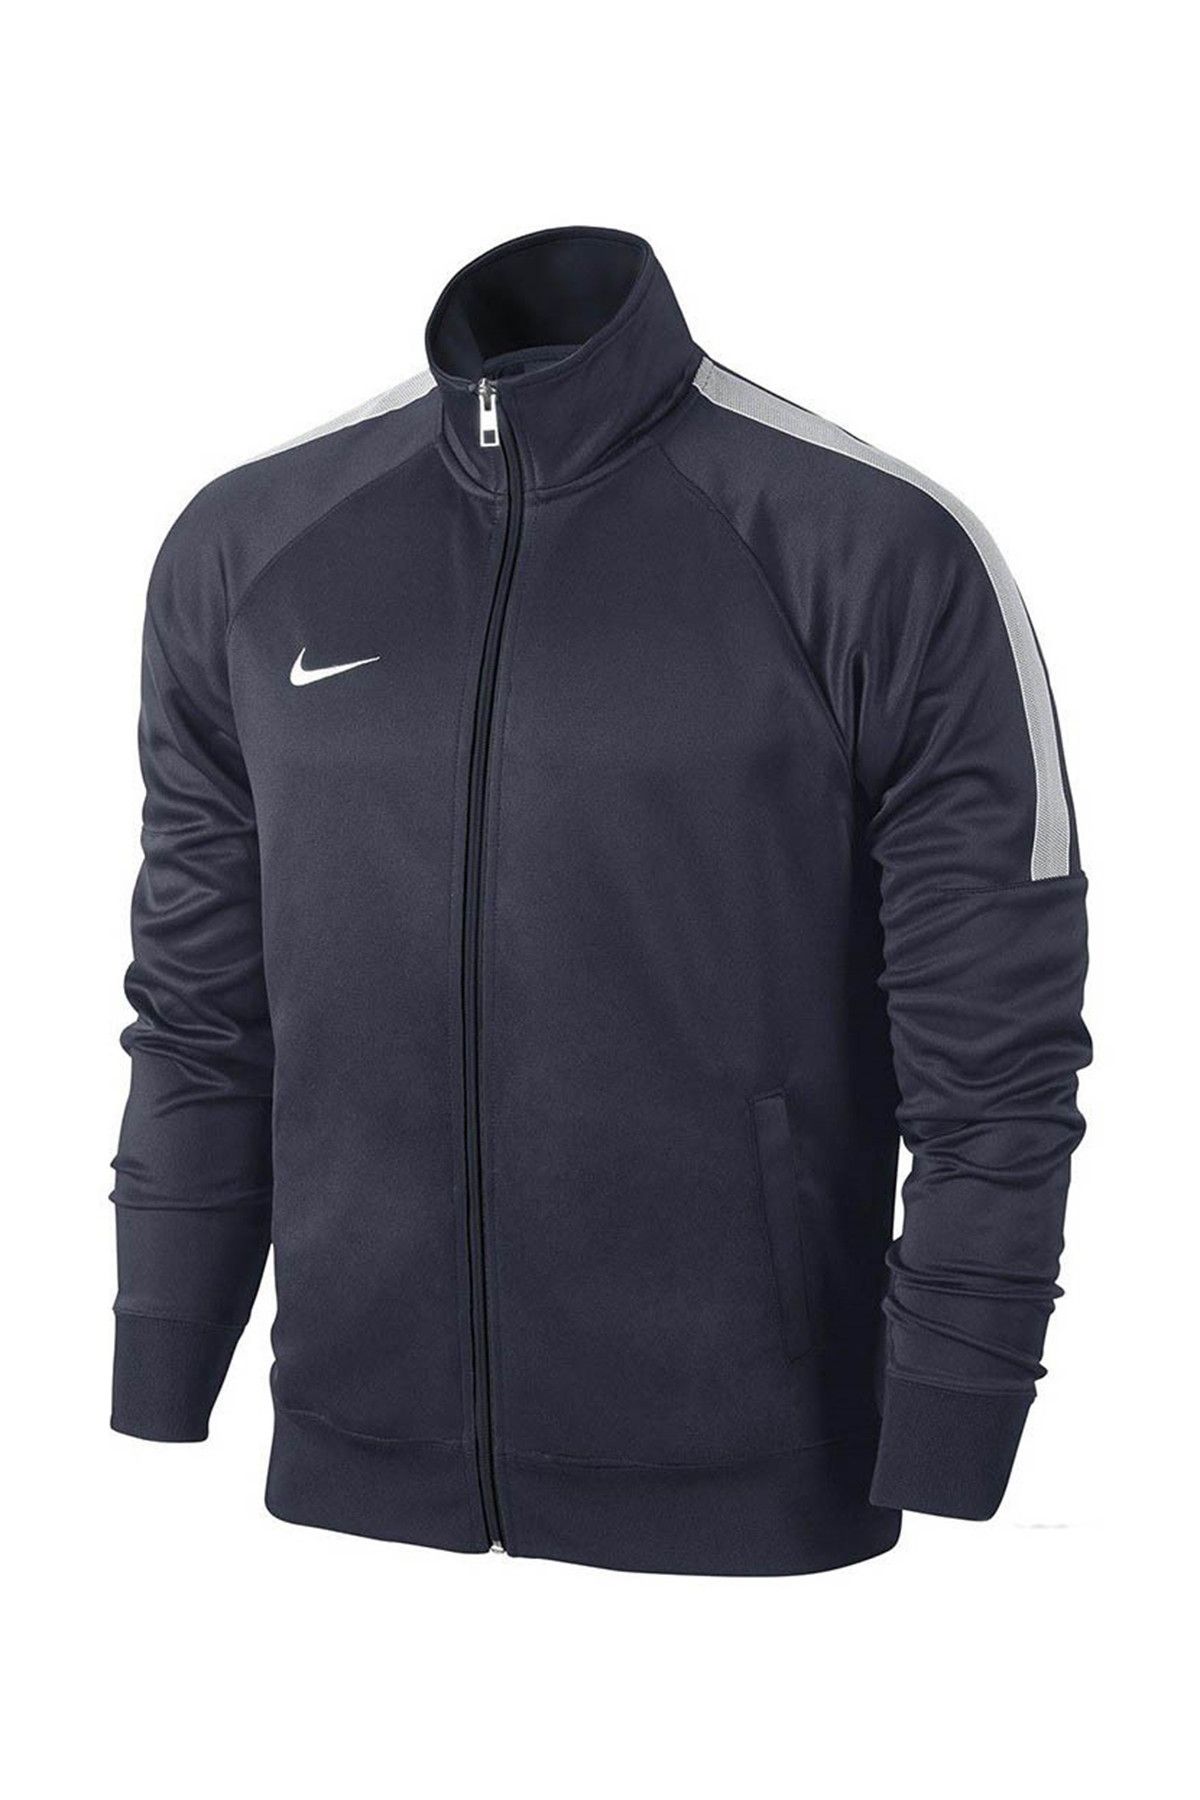 Nike Team Club Trainer Jacket Erkek Eşofman Üst  - 658683-451